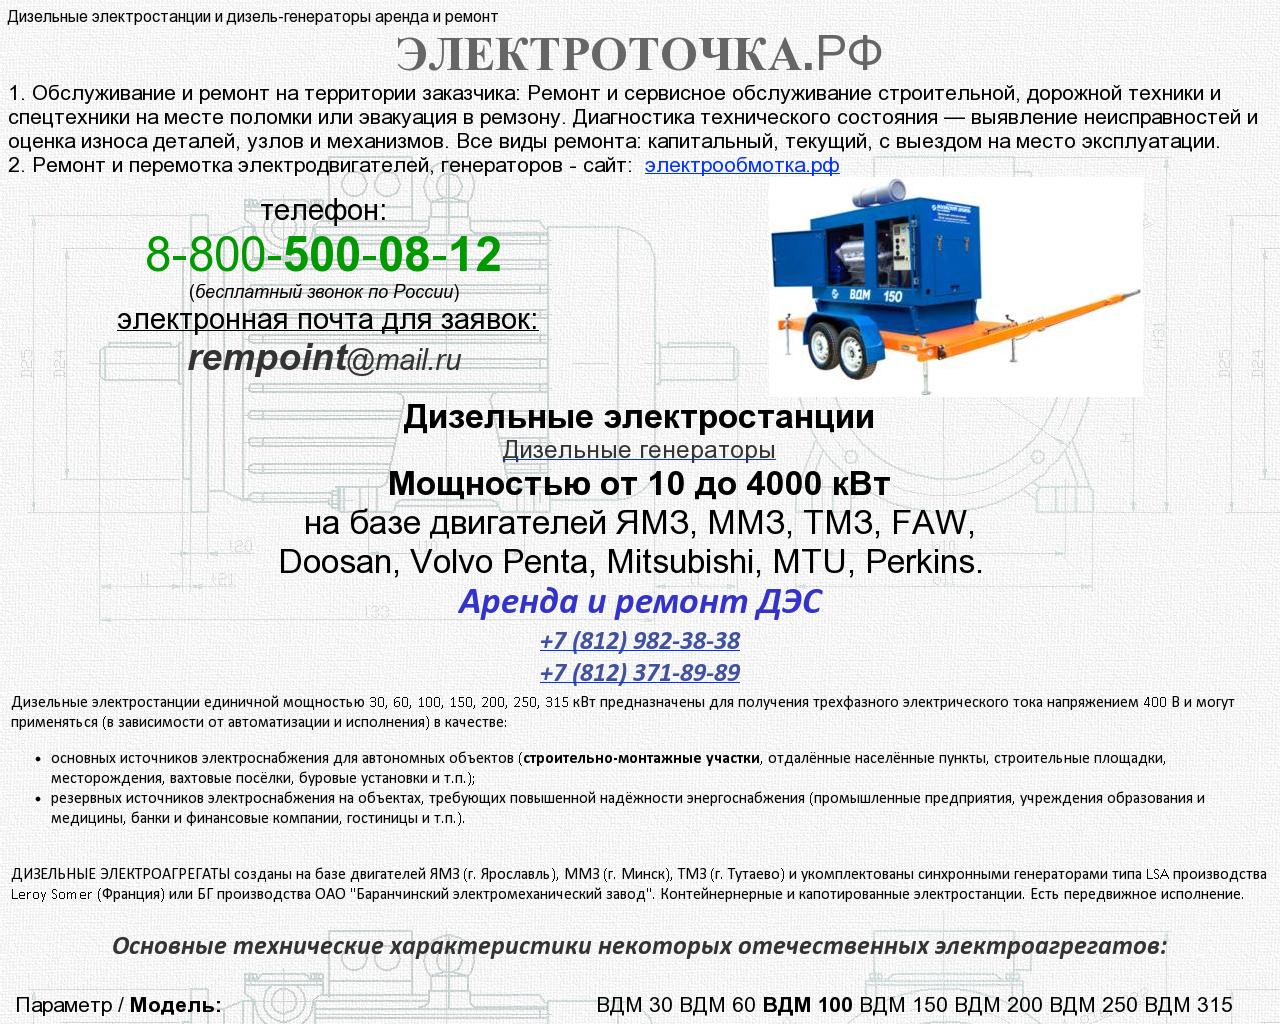 Изображение сайта электроточка.рф в разрешении 1280x1024